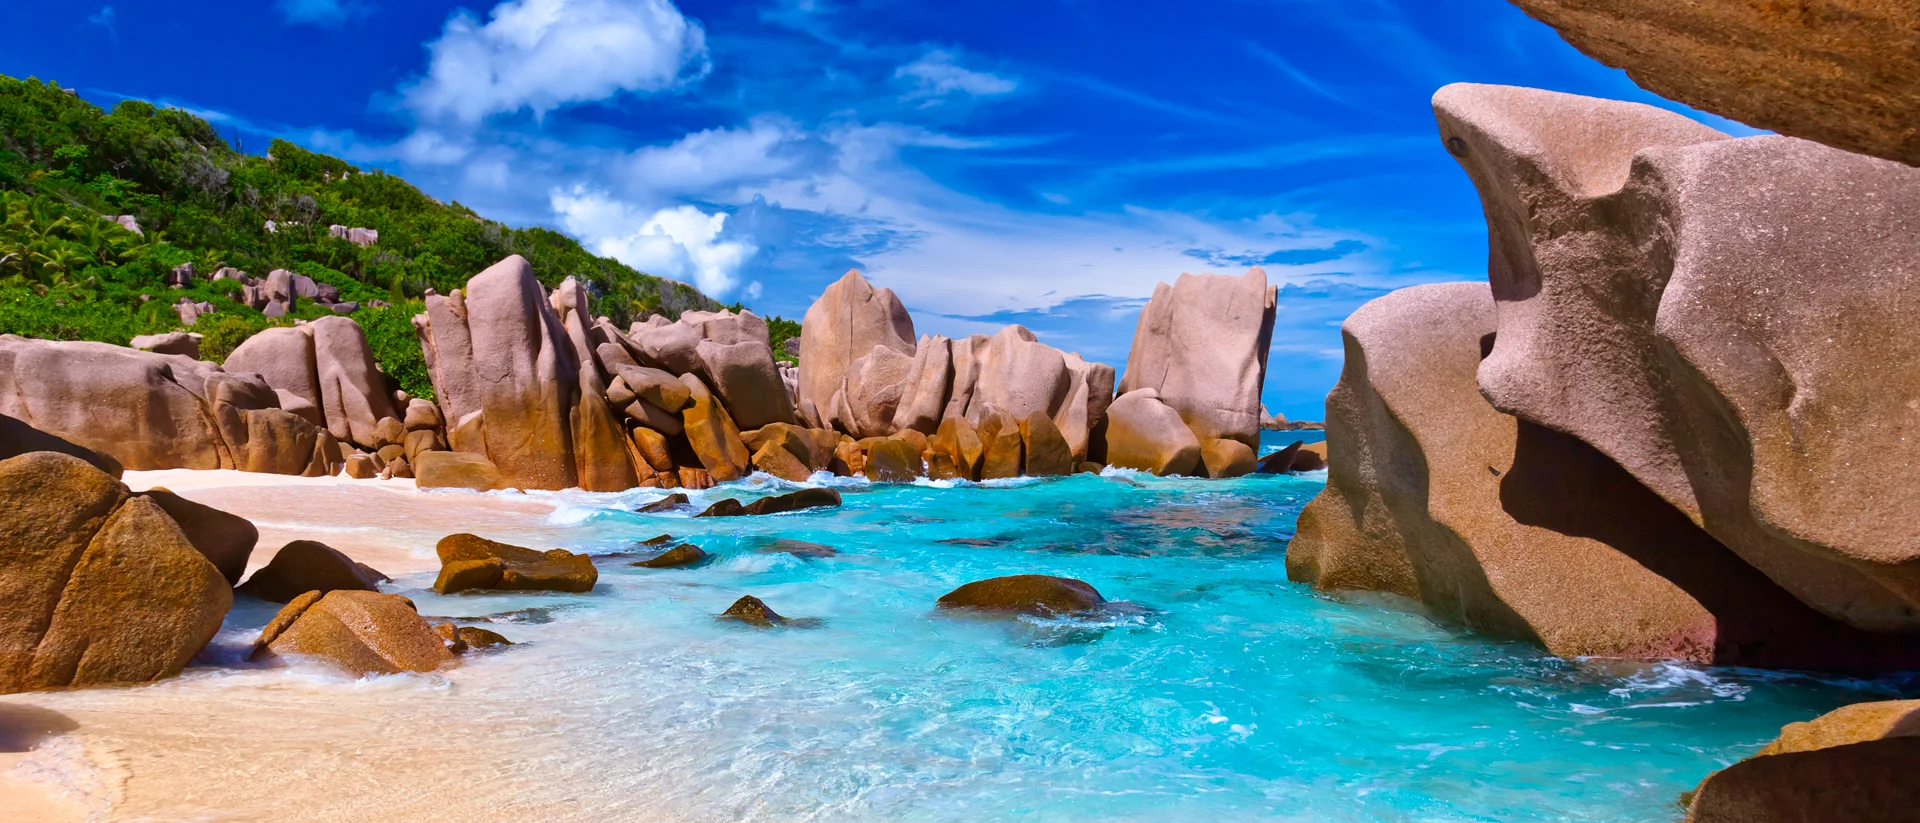 Indian Ocean beach crystalline waters and rocks